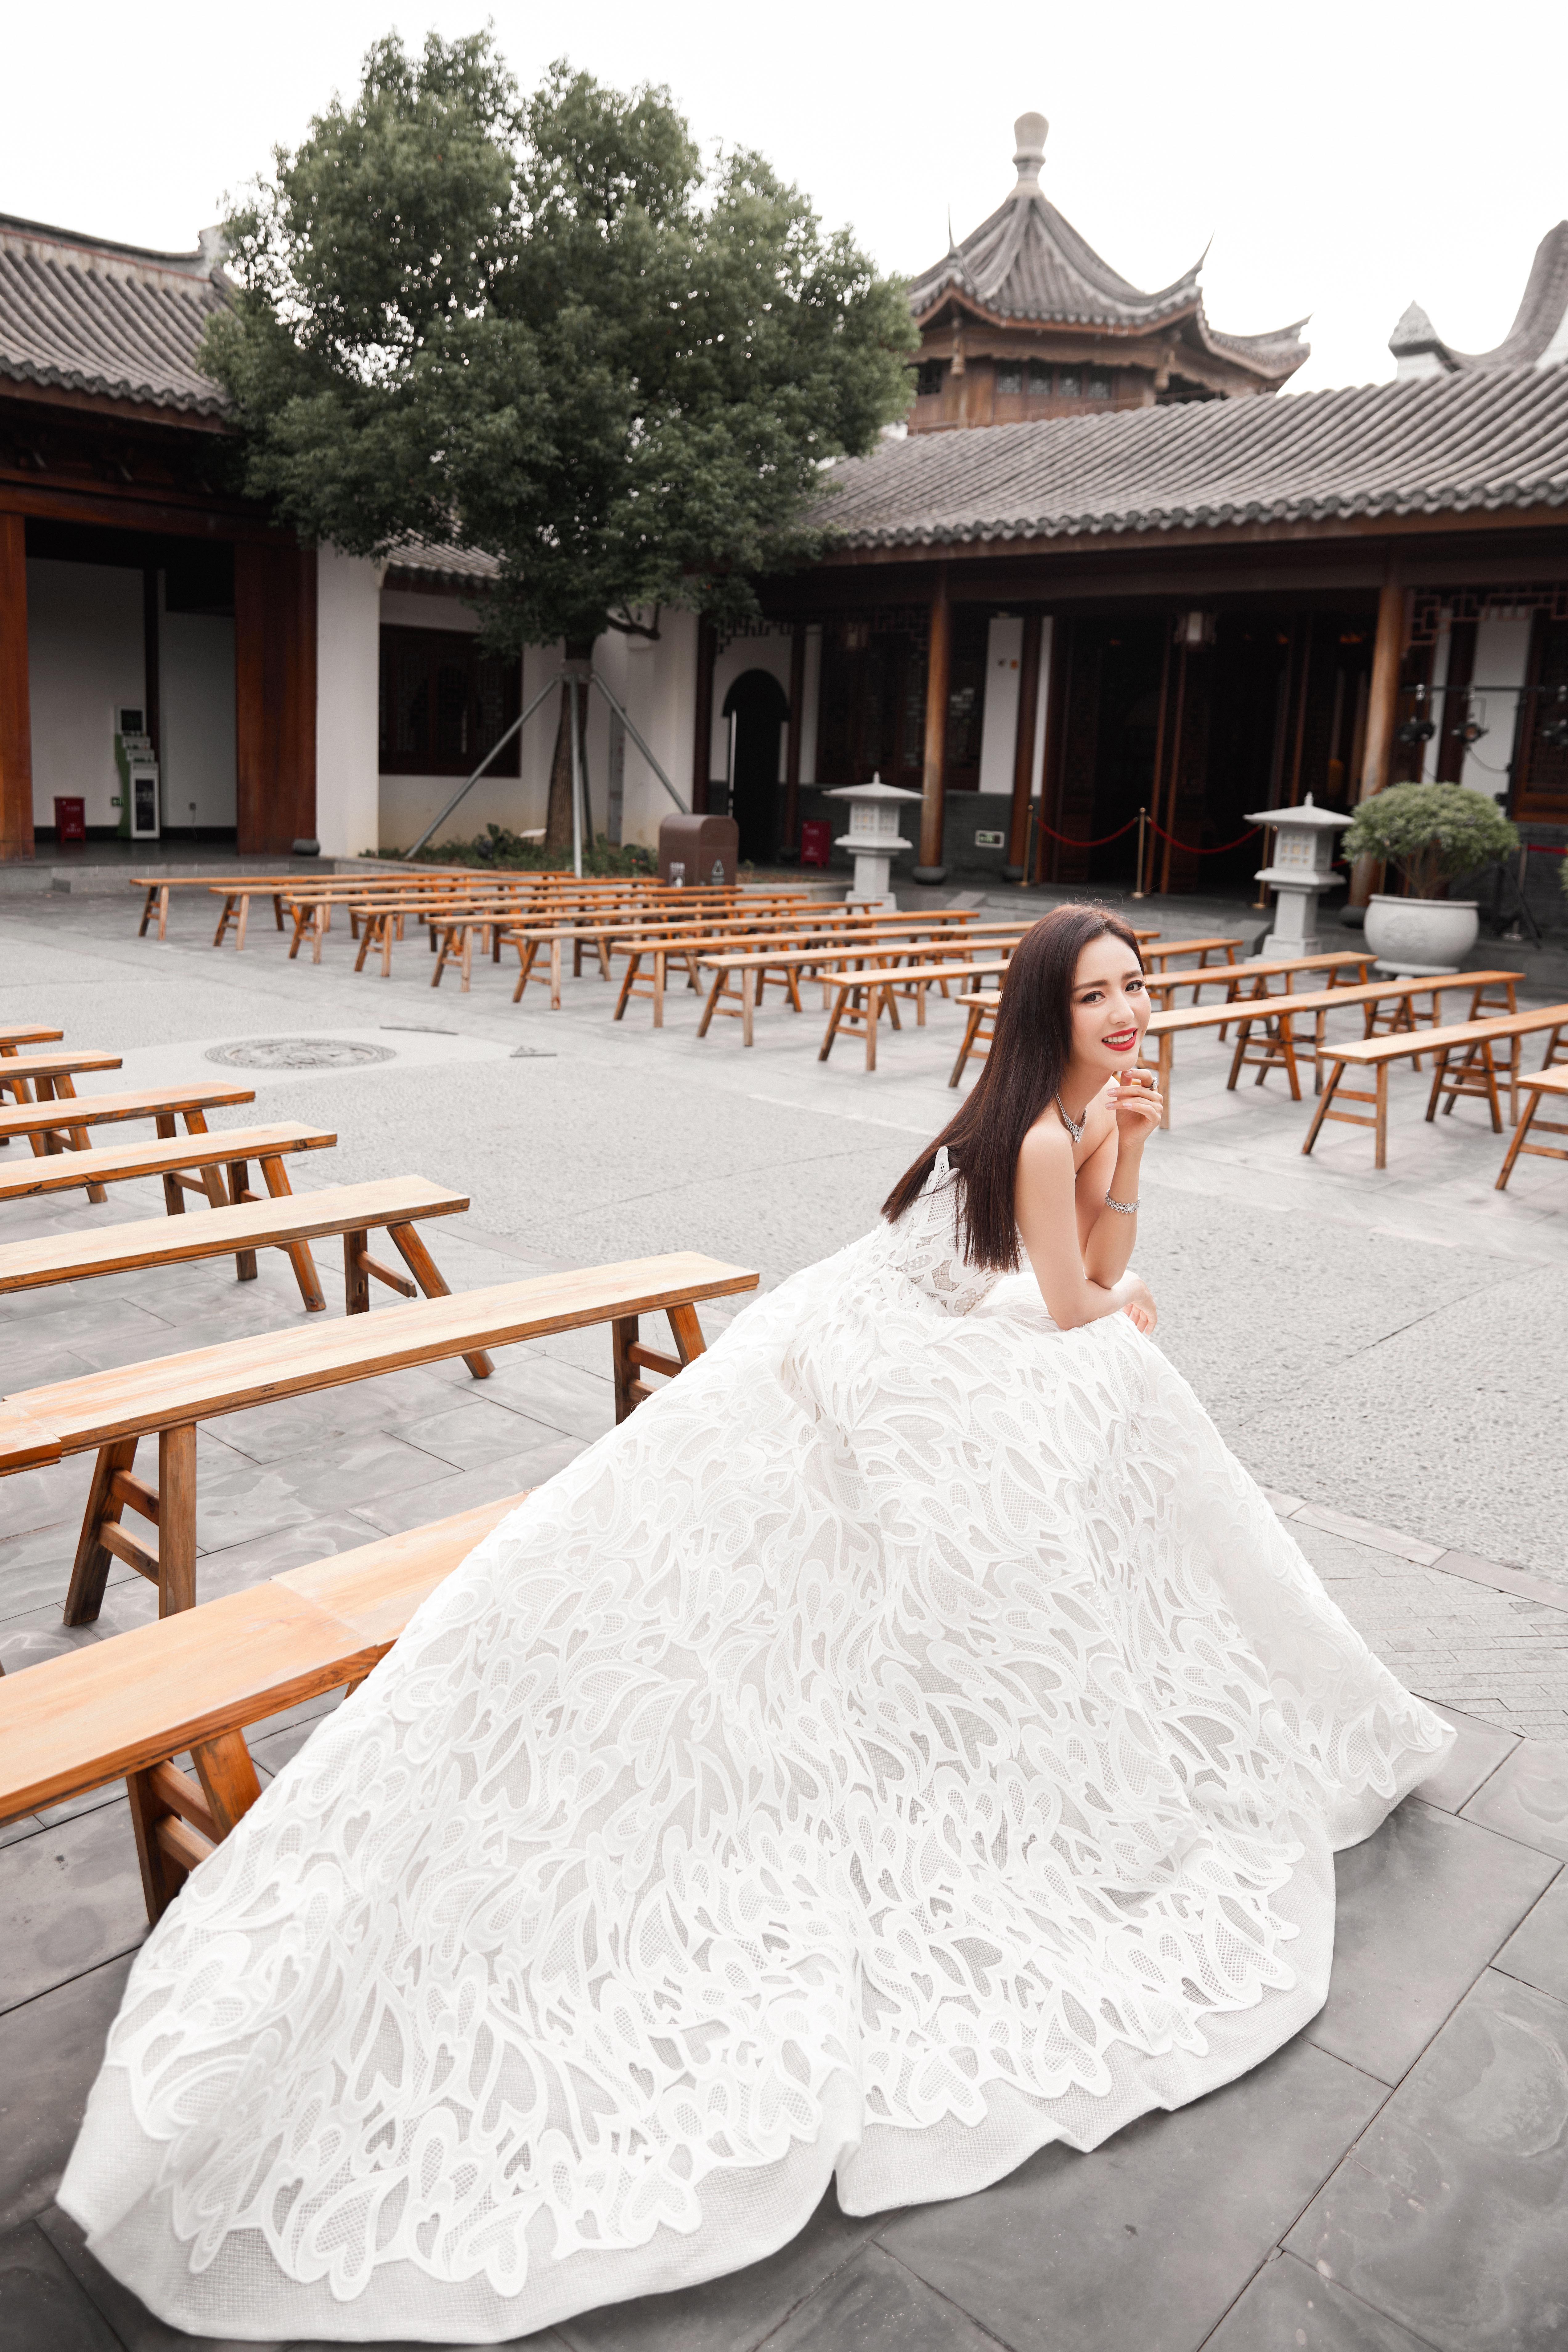 佟丽娅穿白色抹胸裙身材纤细 露美背气质迷人,1 (9)